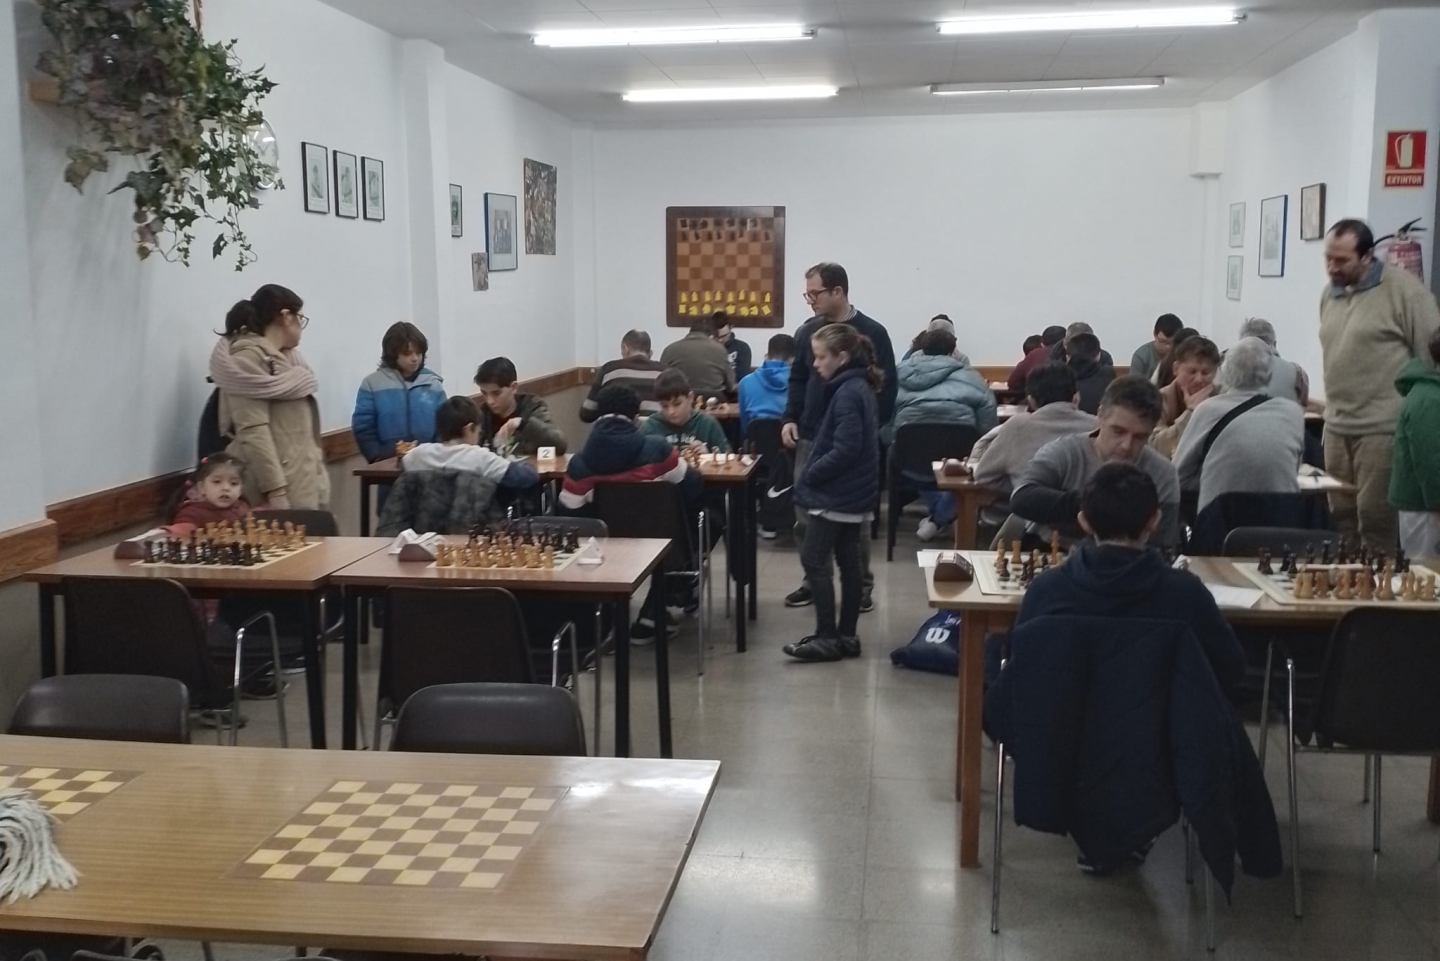 escacs_1440x961